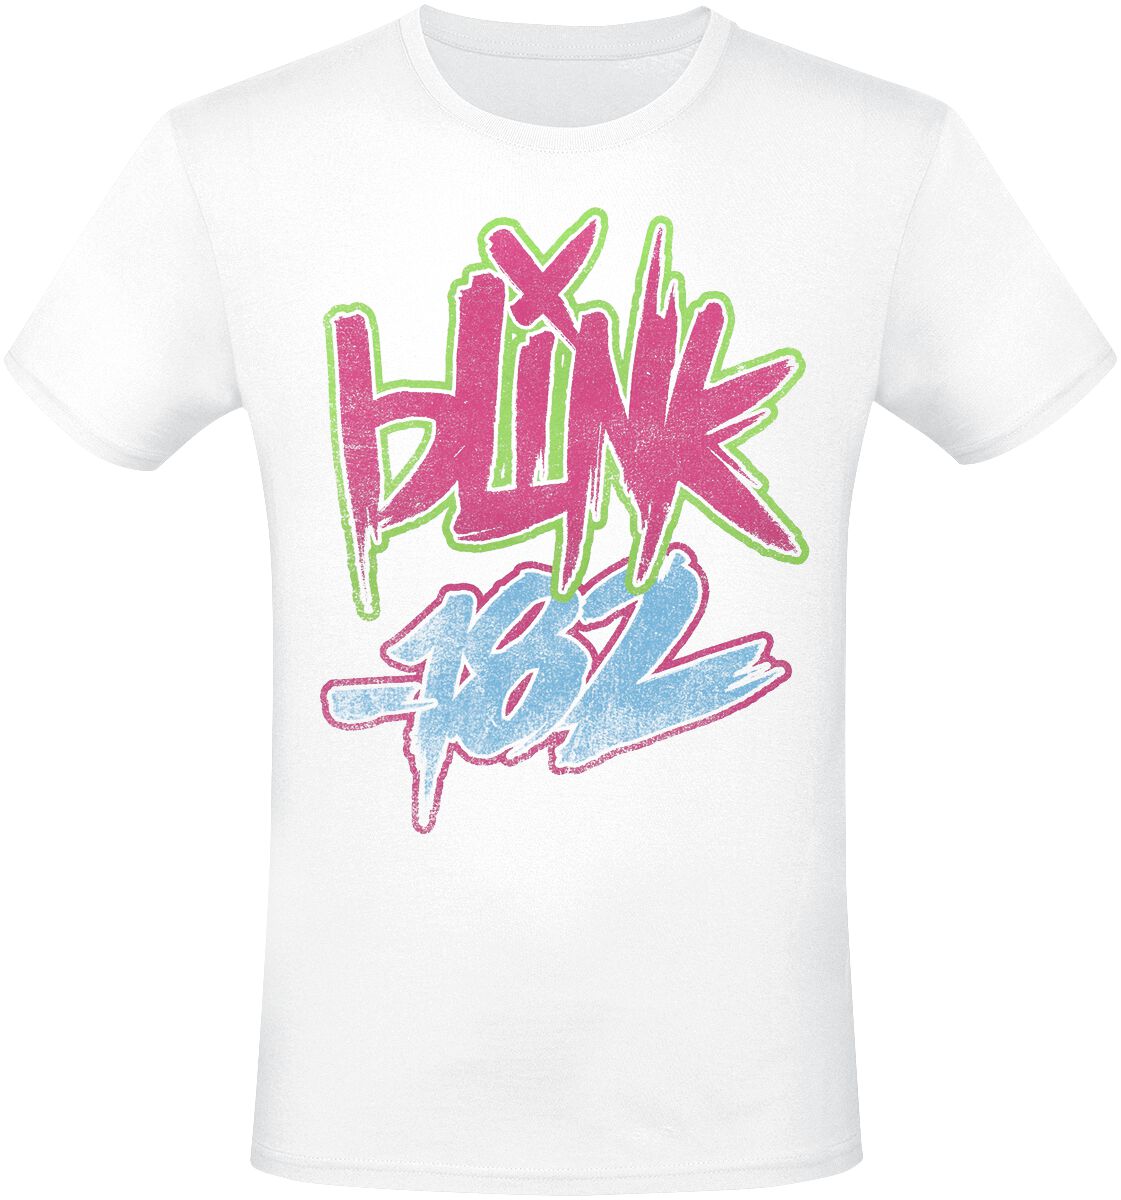 Blink-182 Text T-Shirt weiß in M